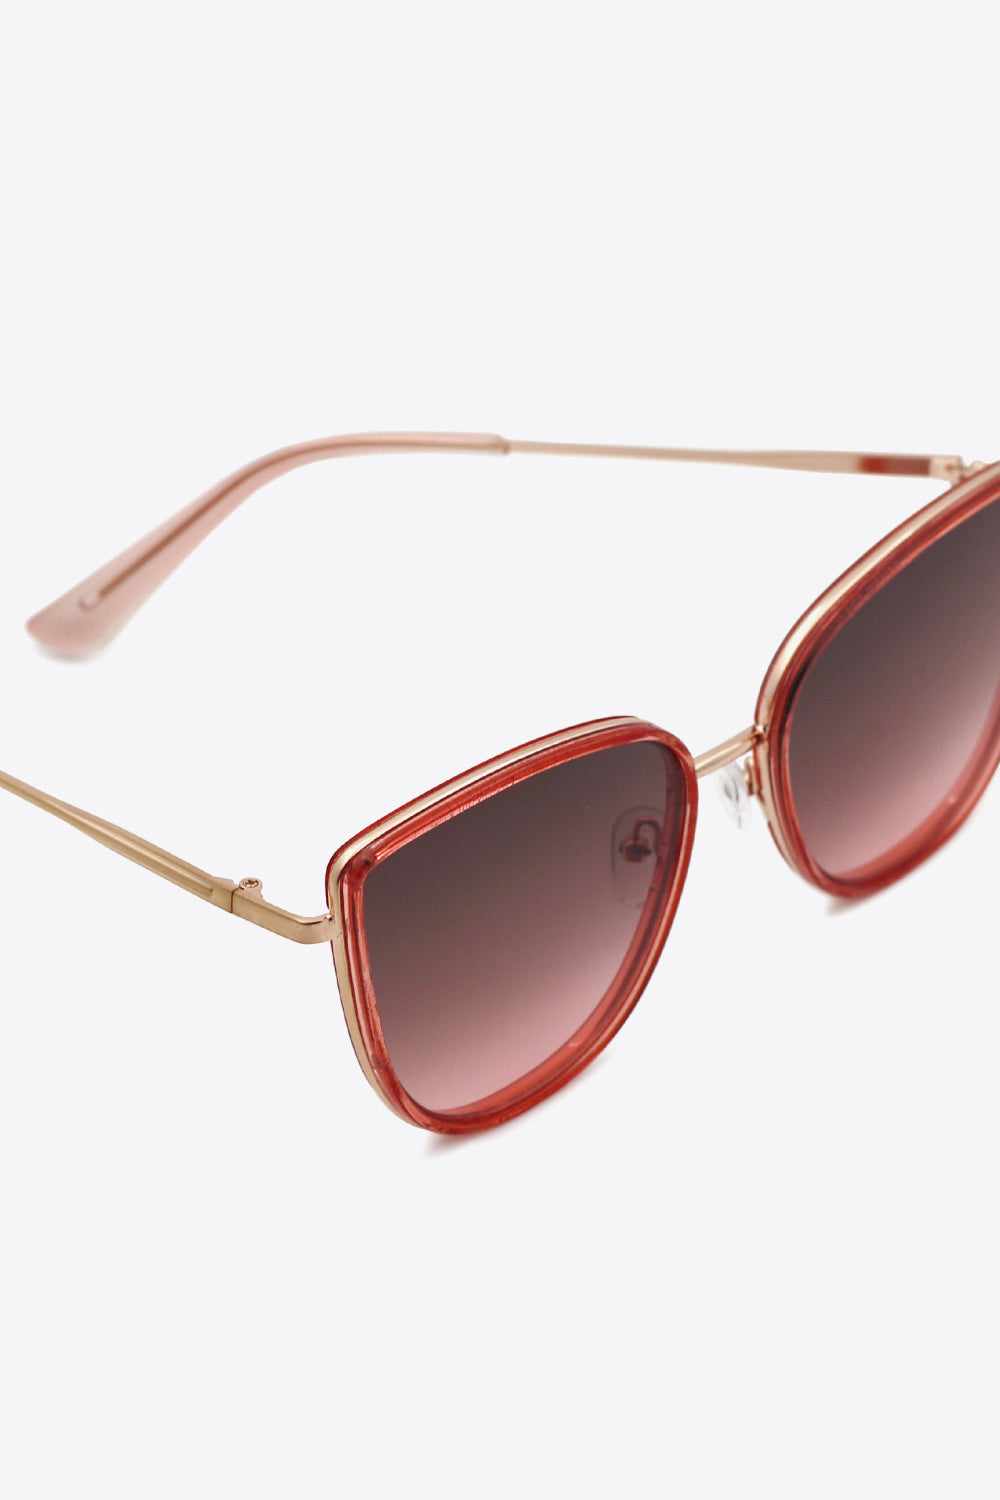 Full Rim Metal-Plastic Hybrid Frame Sunglasses - bertofonsi